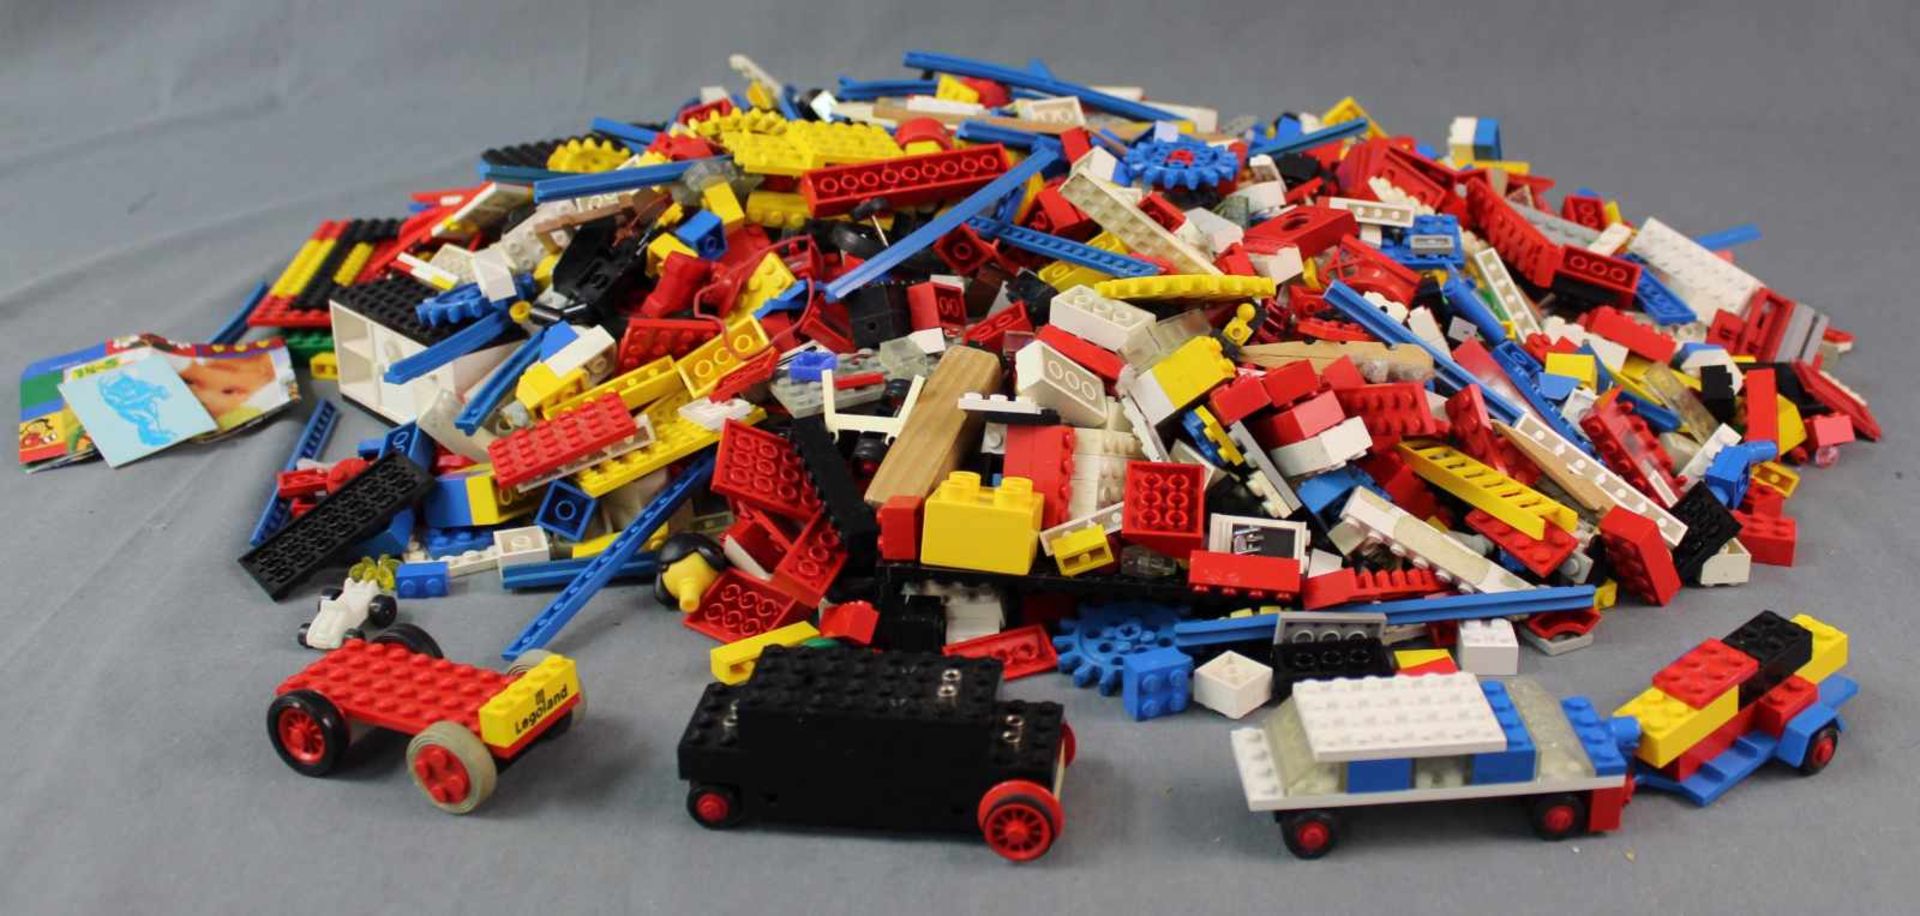 4,6 kg Lego Steine und Teile gemischt. Mindestens 4,6 kg gewogen. 4,6 kg Lego stones and parts.